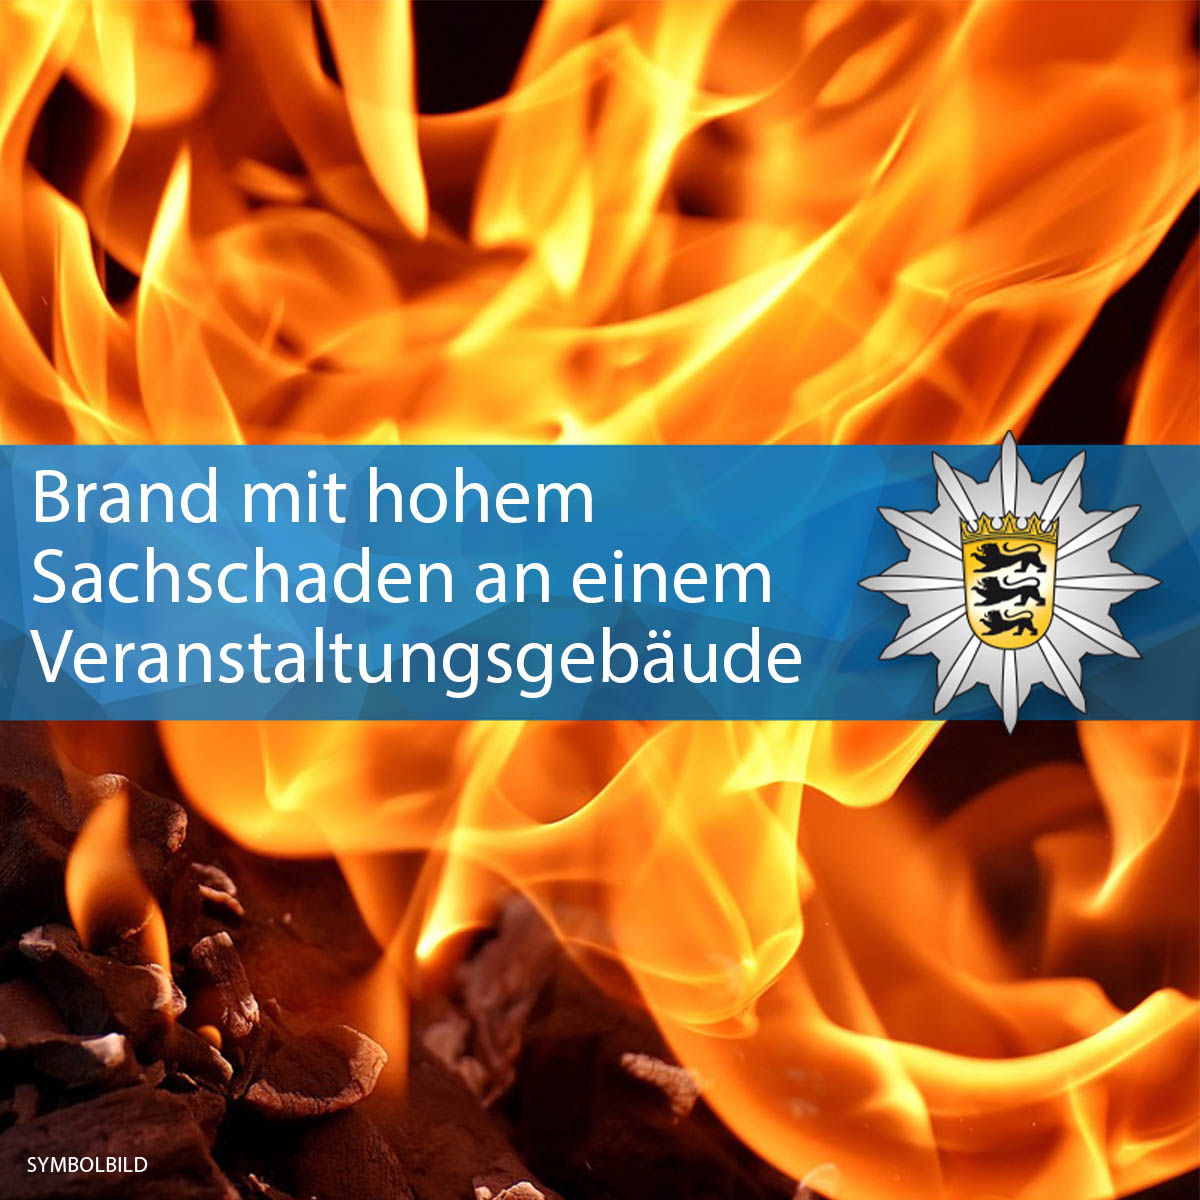 + #Brand mit hohem Sachschaden an einem Veranstaltungsgebäude +

🌐 Karlsdorf-Neuthard 🔥 🚒 🚔 
▶️ Hier geht es zum Pressebericht: sohub.io/t0er

Eure #Polizei #Karlsruhe